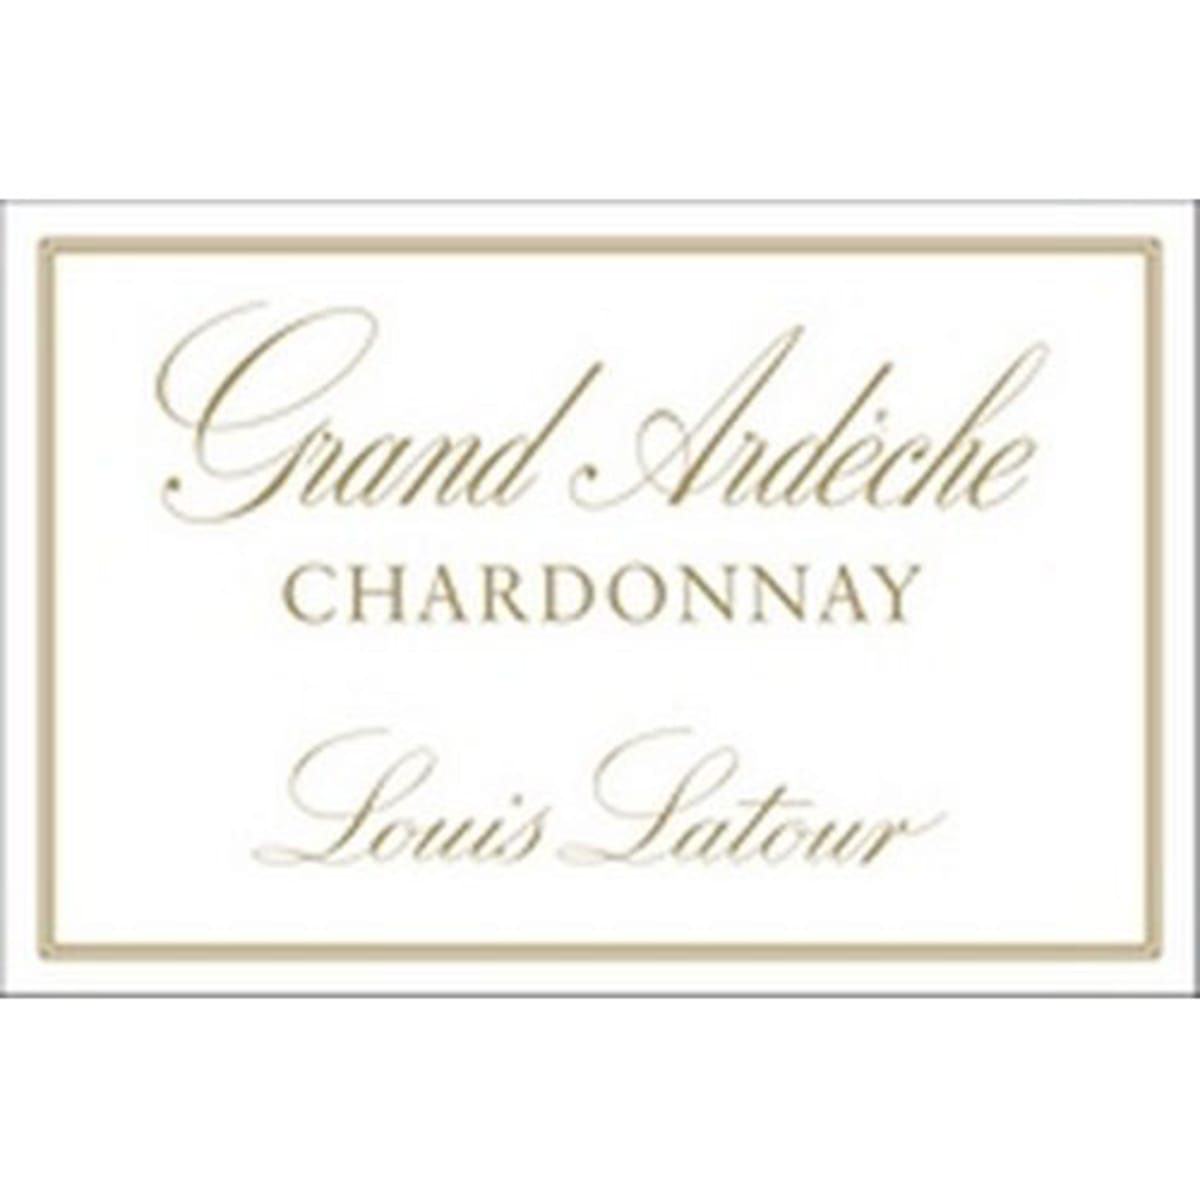 Louis Latour Grand Ardeche Chardonnay 2011 Front Label